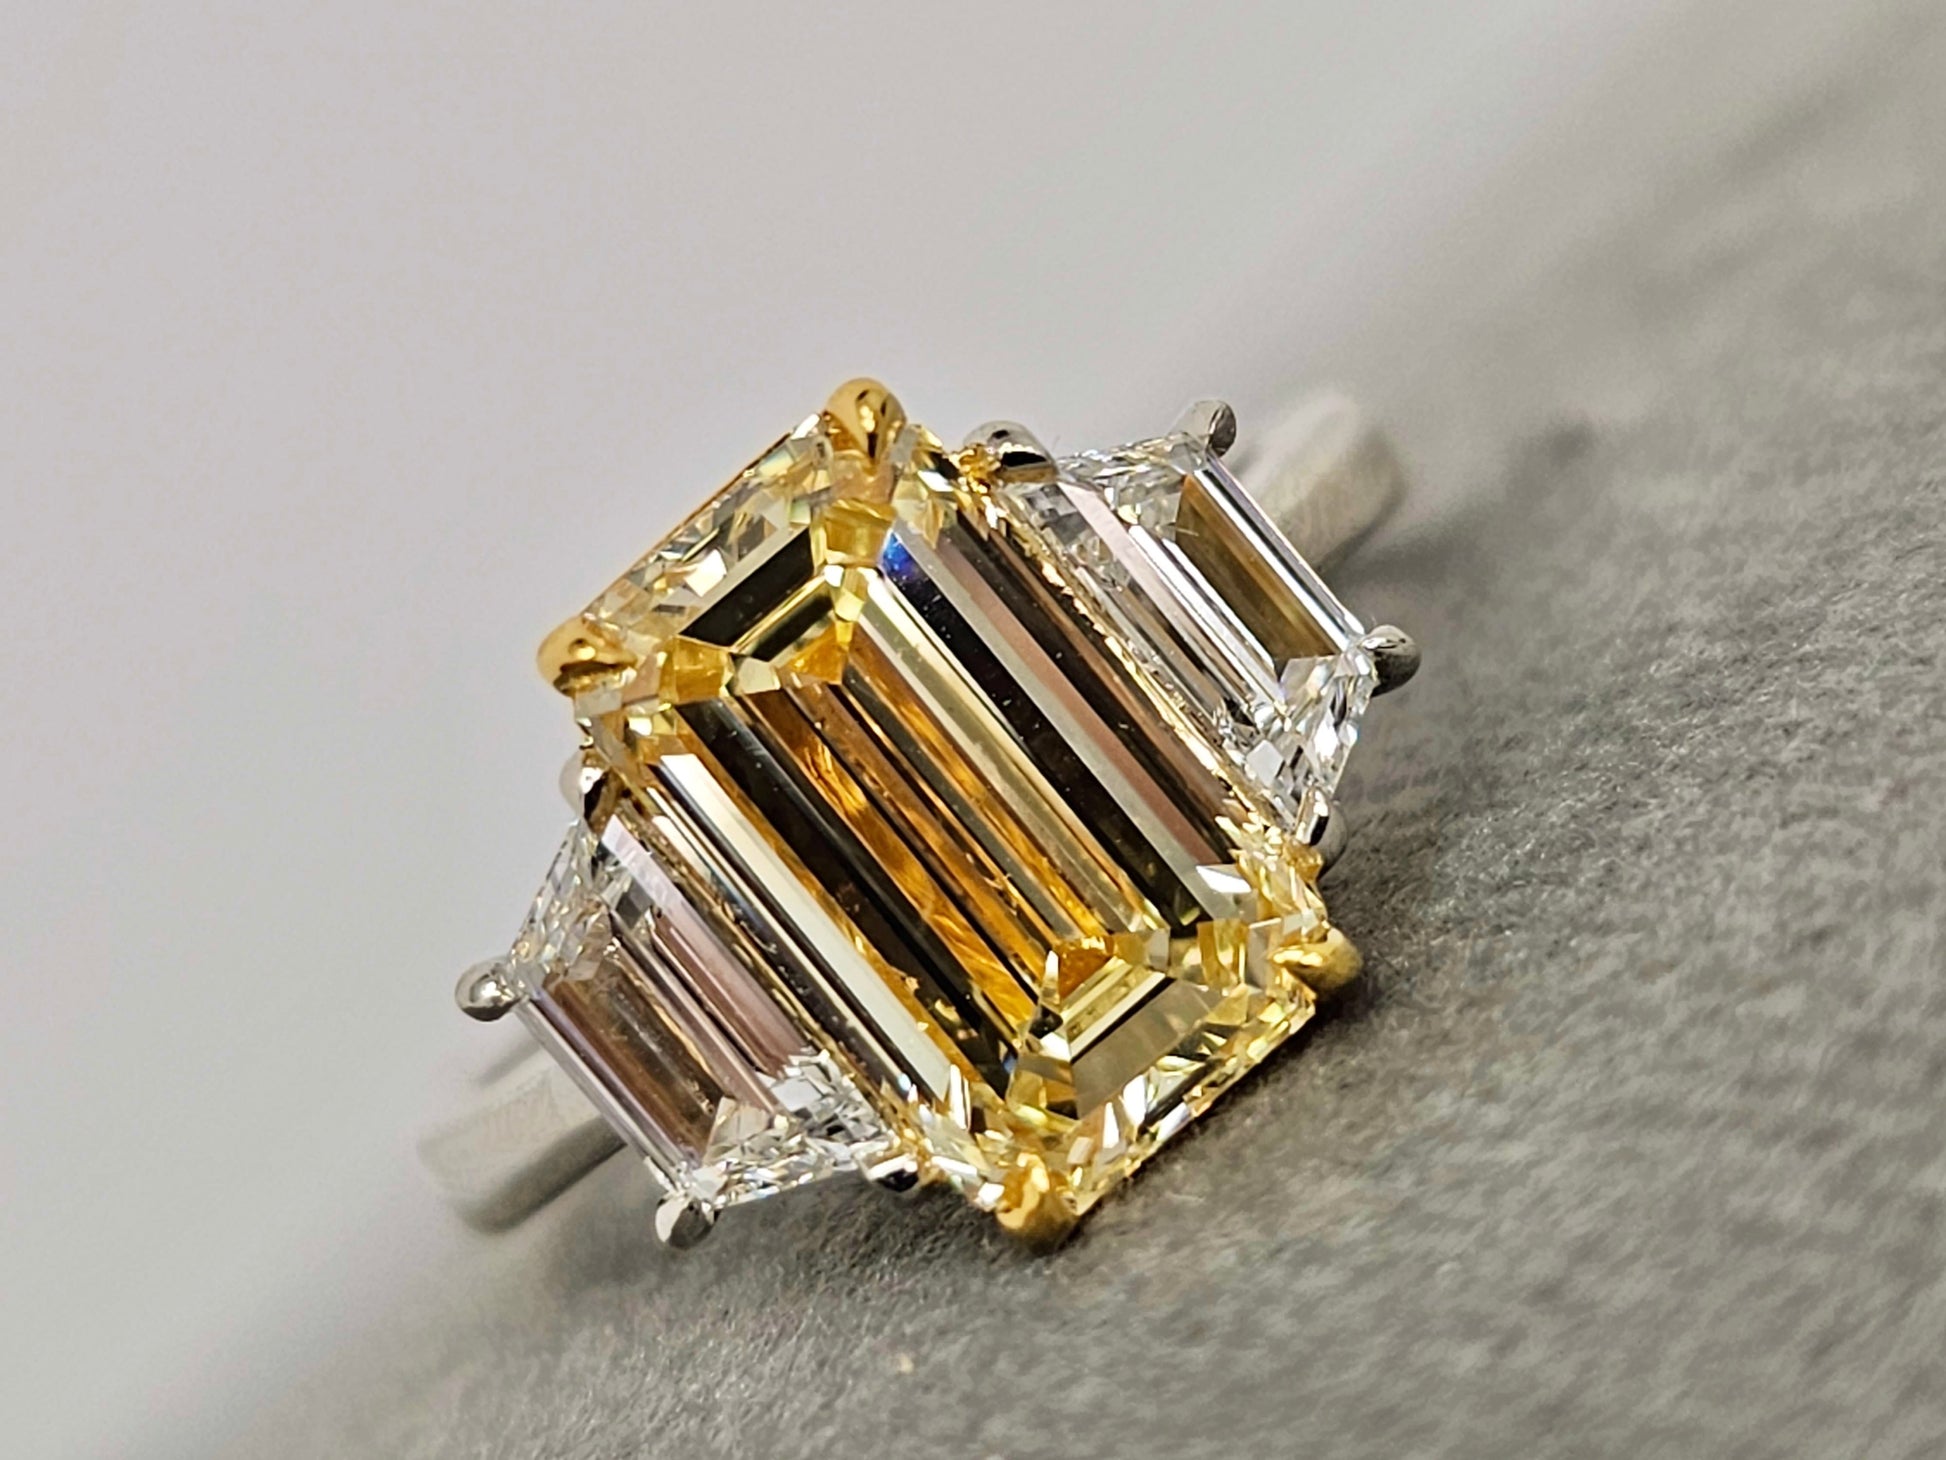 3 carat yellow diamond elongated emerald cut three stone ring with trapezoids